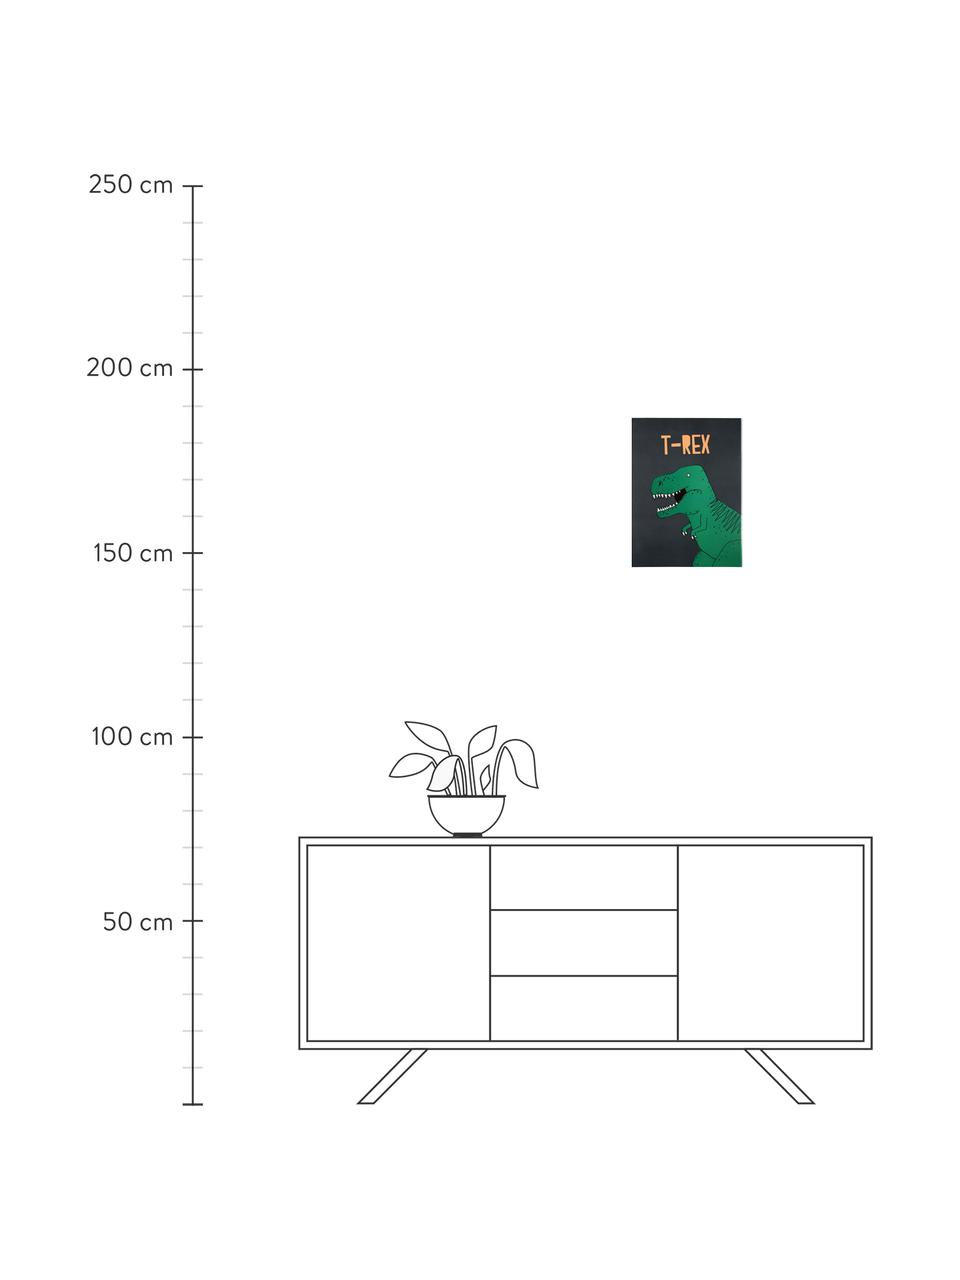 Posterset Dinosaur, 2-delig, Digitale print op papier, 200 g/m², Groen, grijs, geel, rood, blauw, 31 x 41 cm